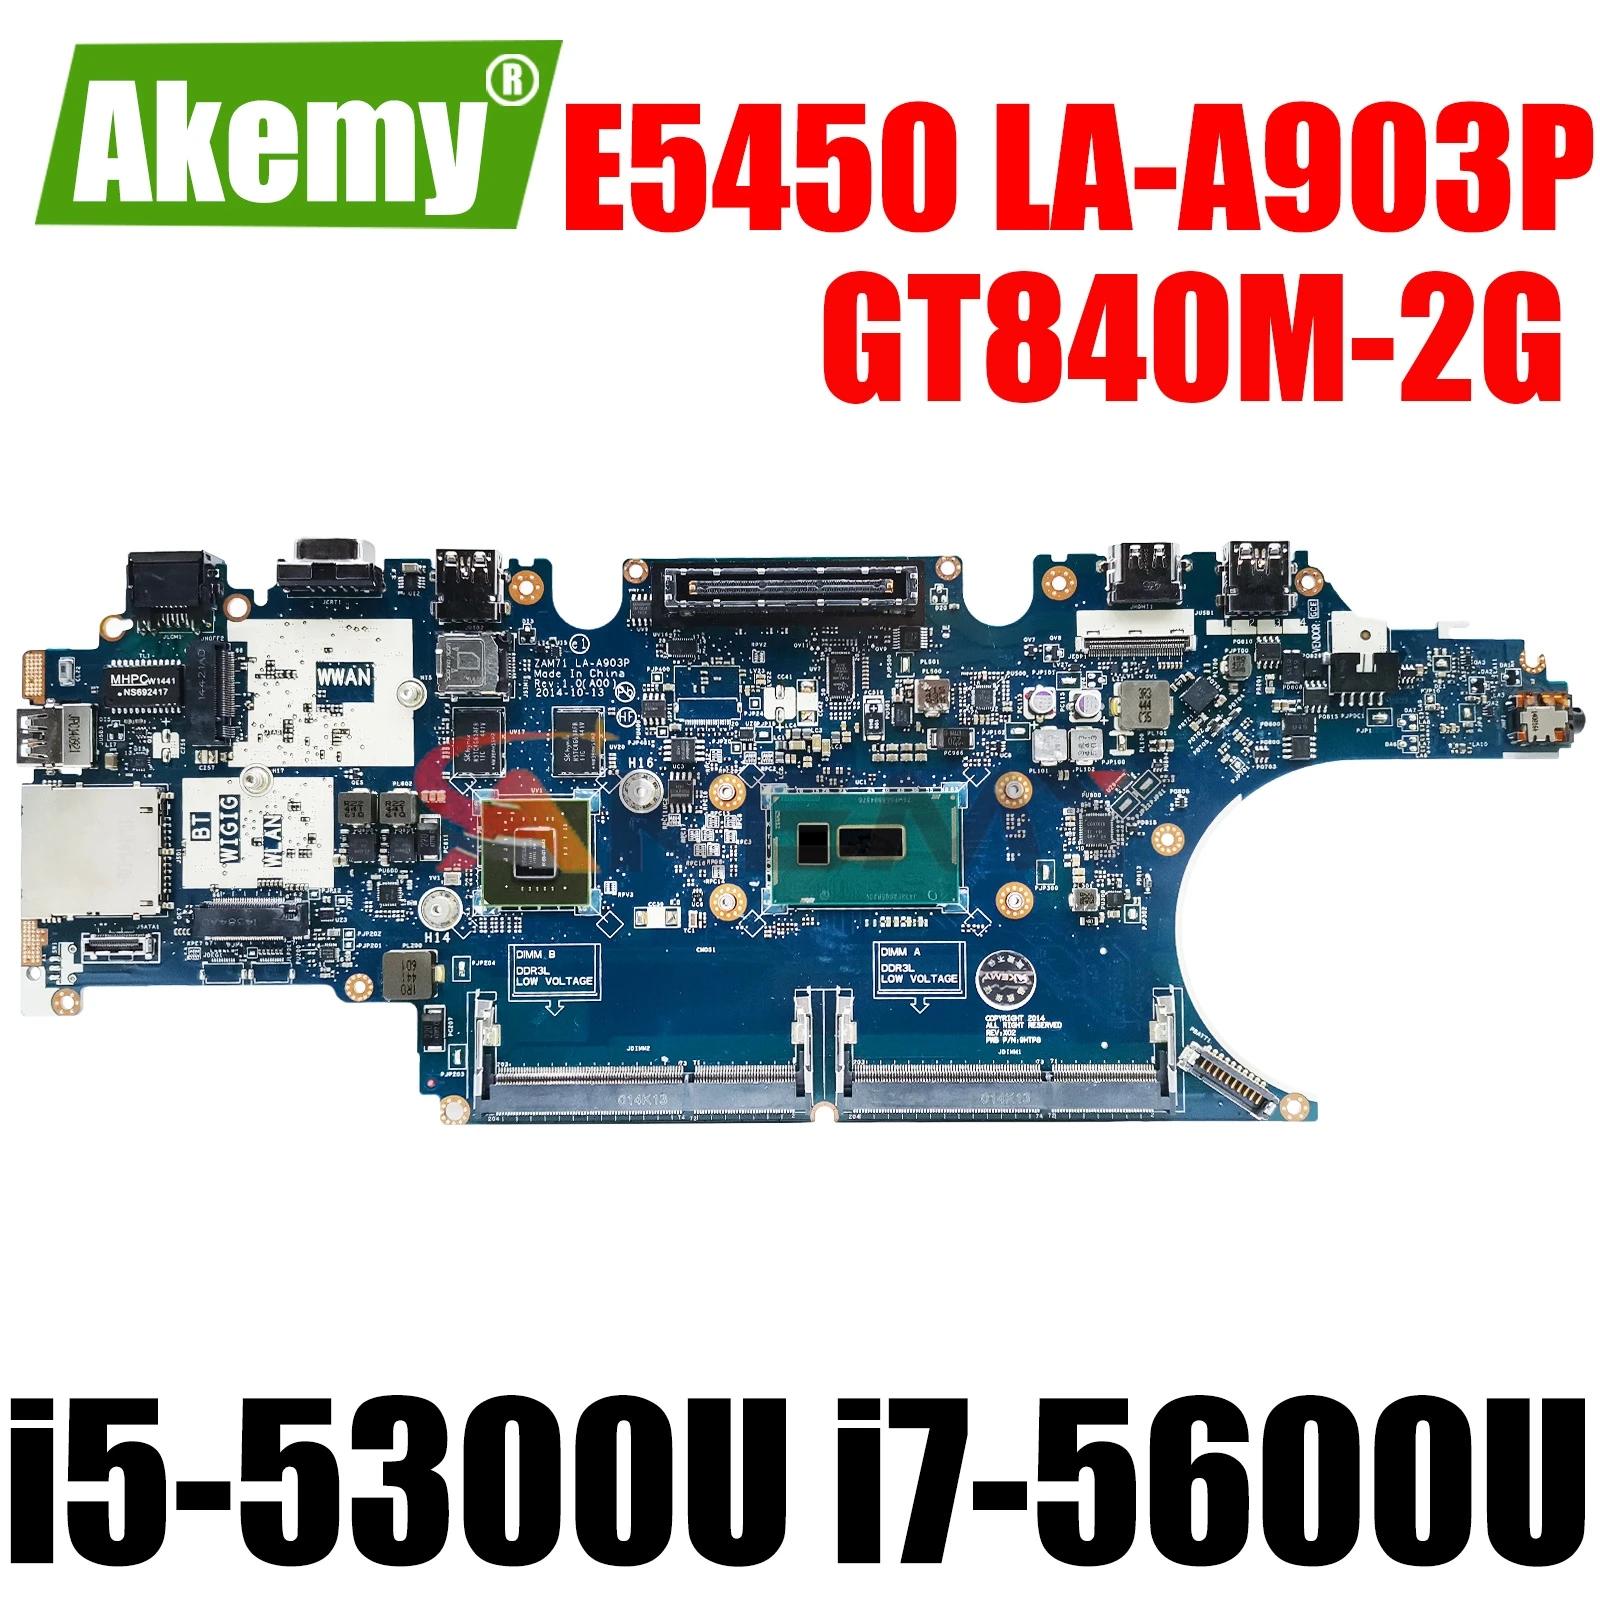 I5-5300U i7-5600U GT840M, 2GB,  ƼƩ E5450 Ʈ , ZAM71 LA-A903P CN-017FG2 CN-0RH5PW Ʈ κ